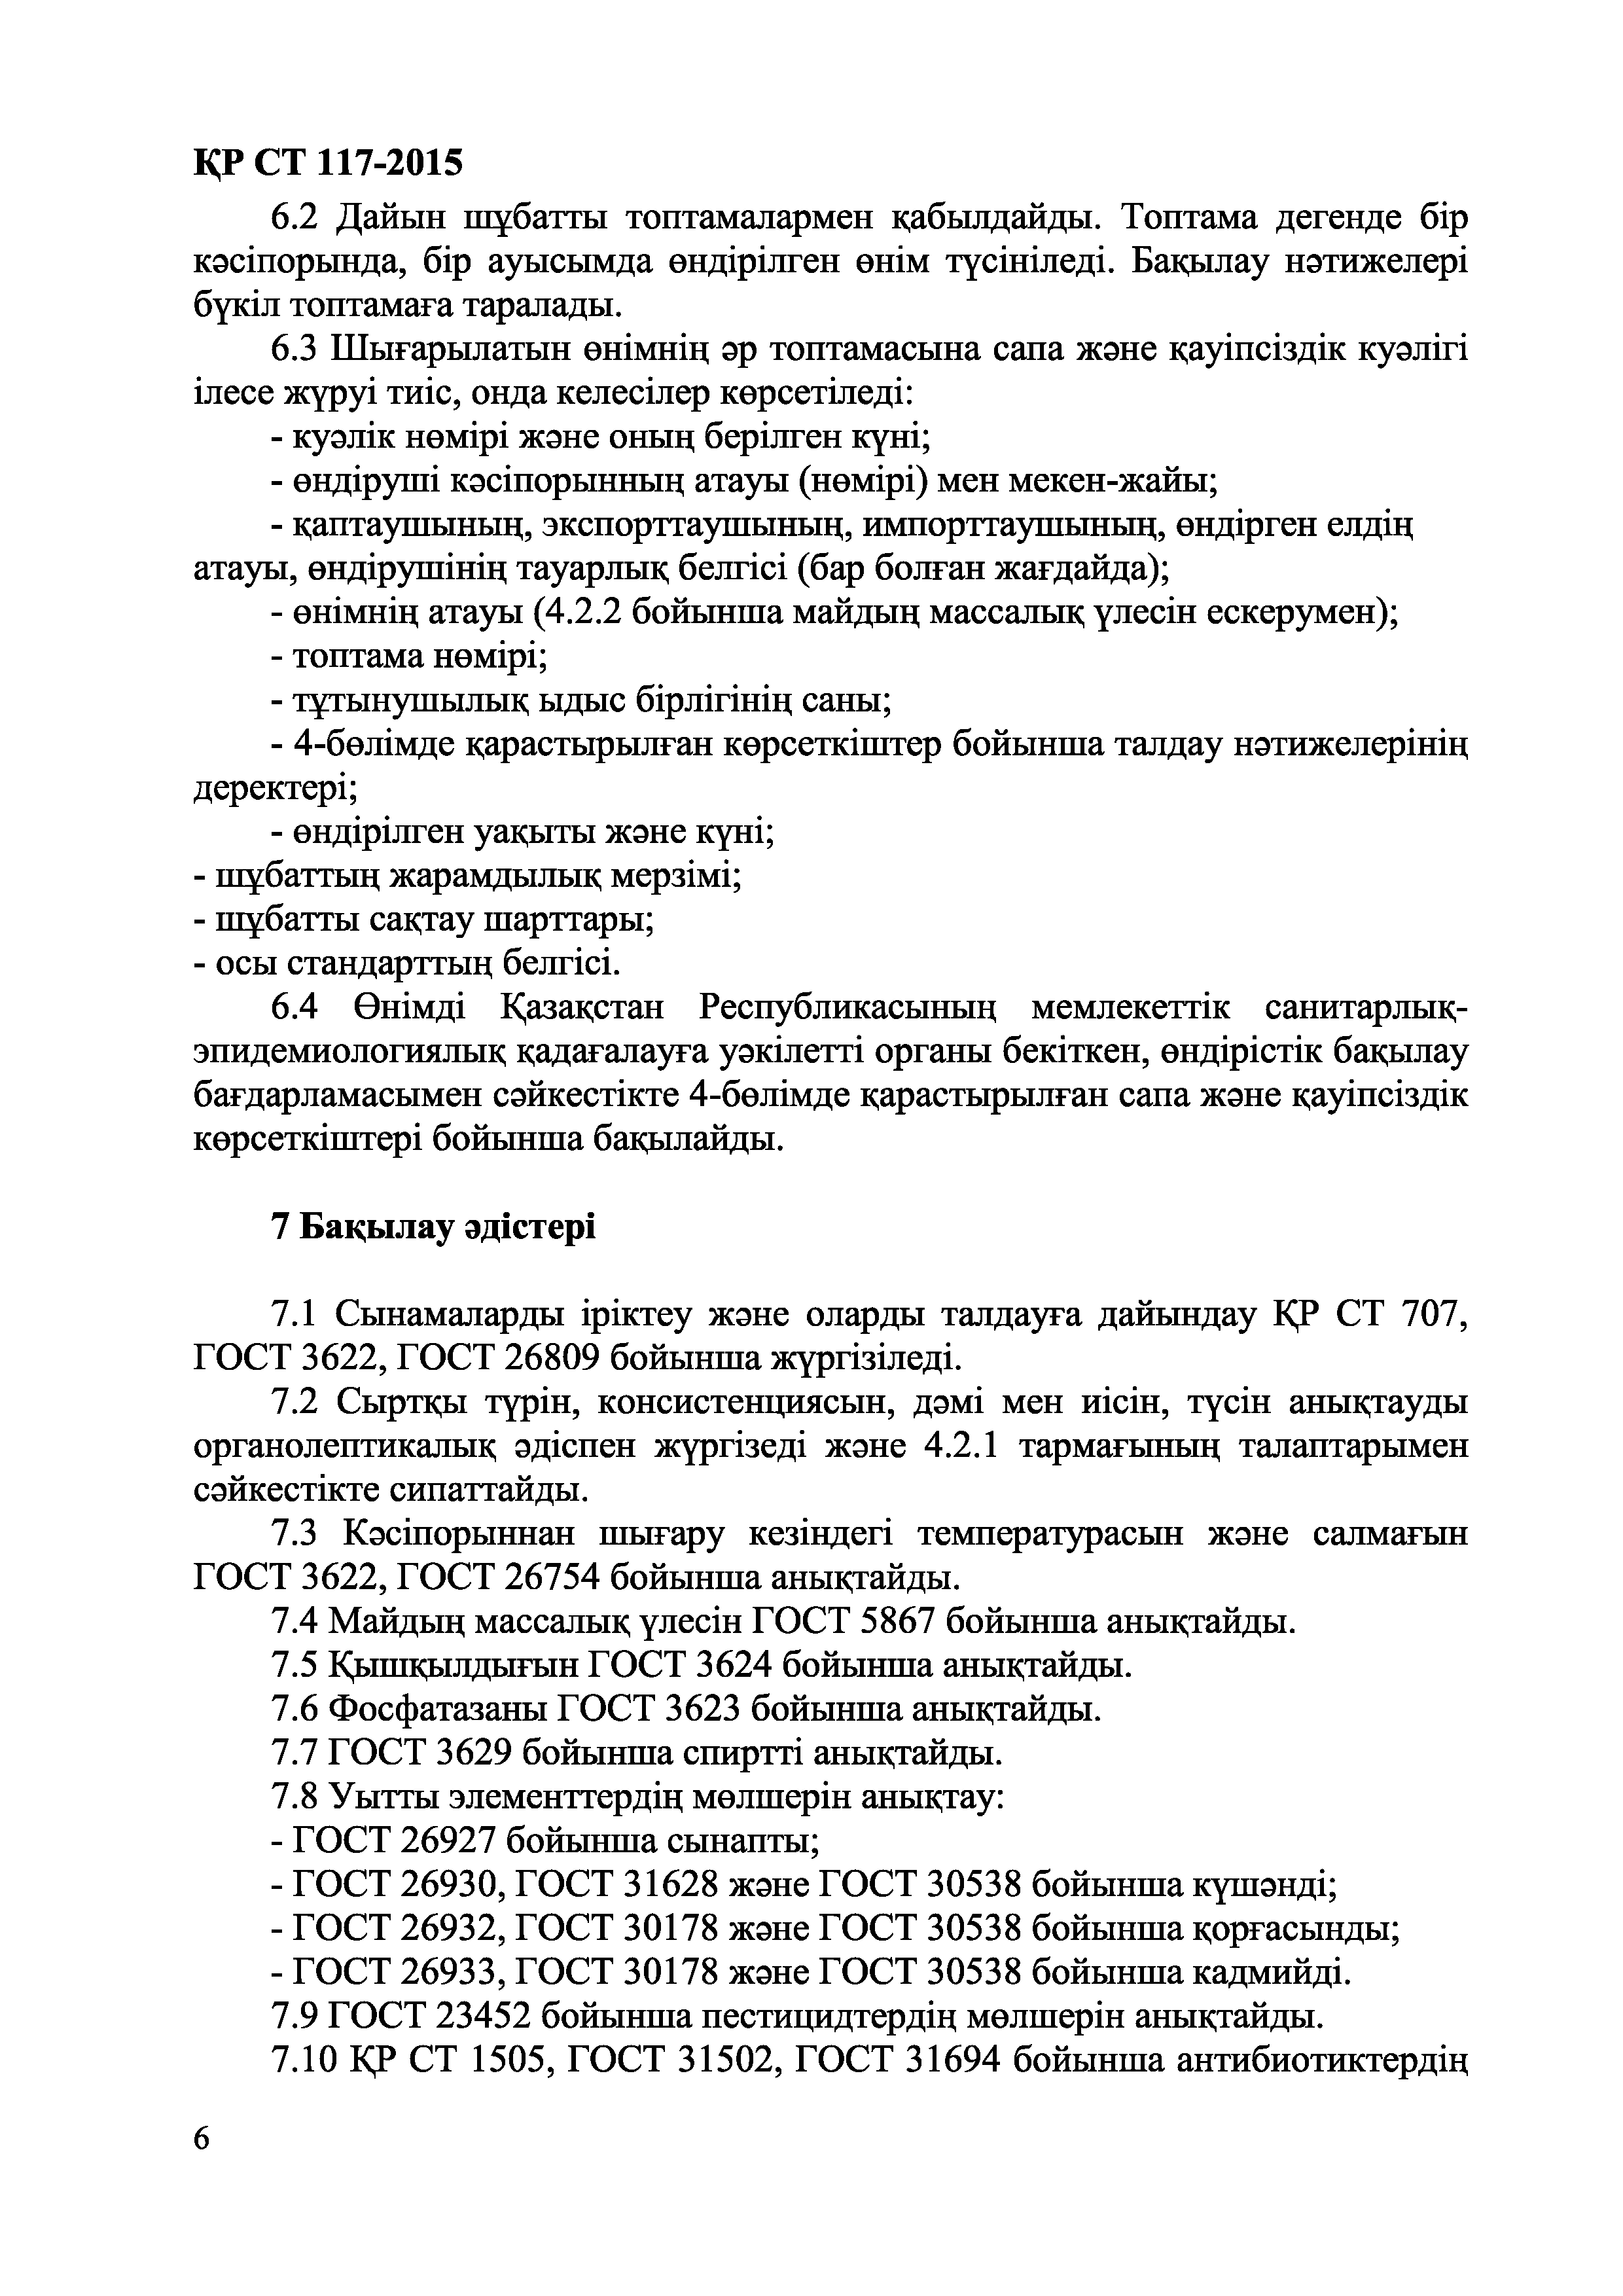 СТ РК 117-2015